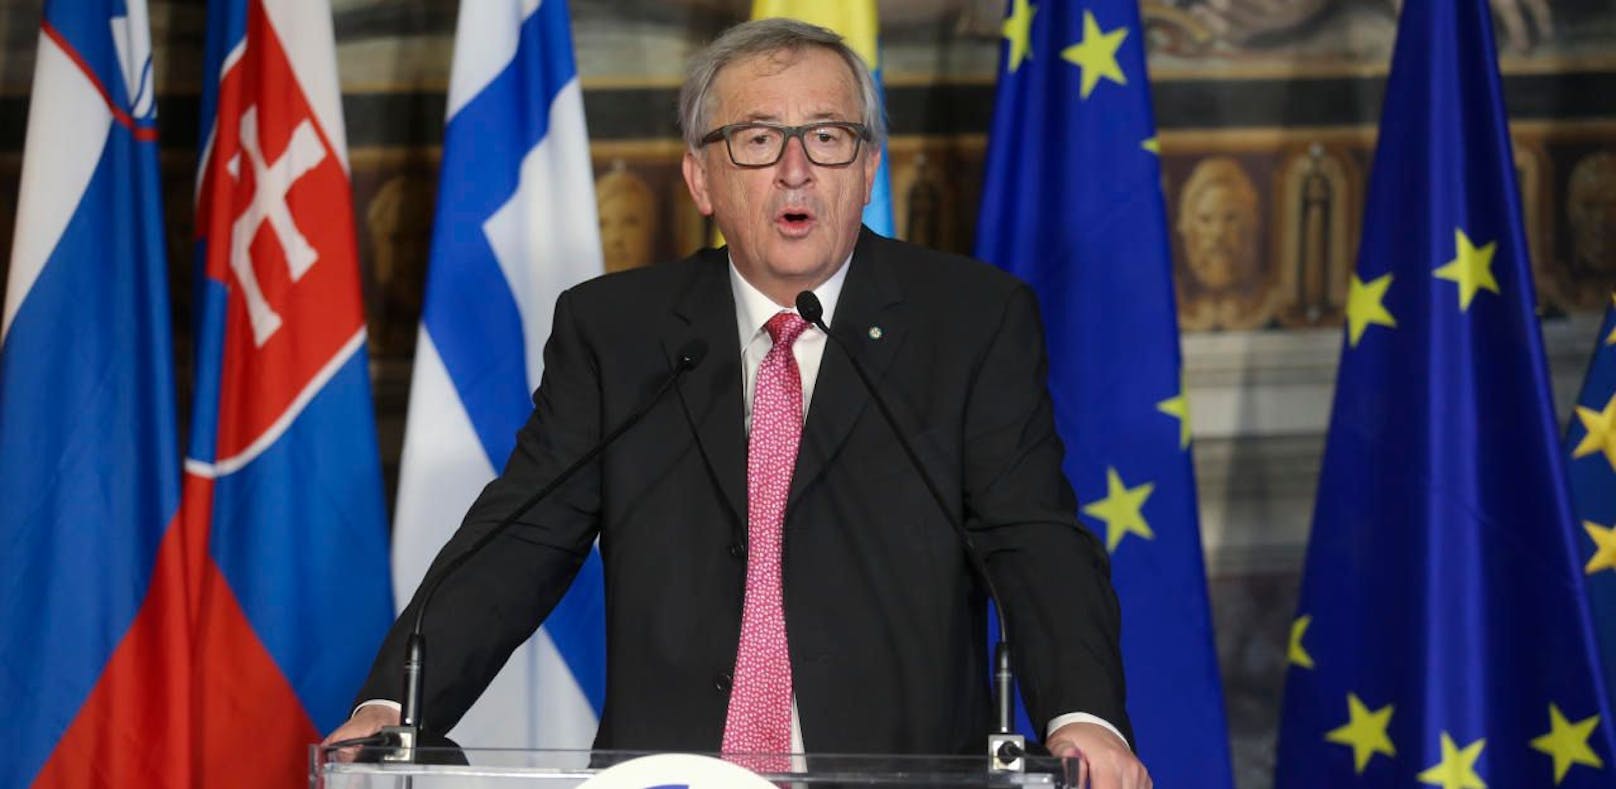 Kommissionspräsident Jean-Claude Juncker beim 60-Jahr-Jubiläum der EU in Rom